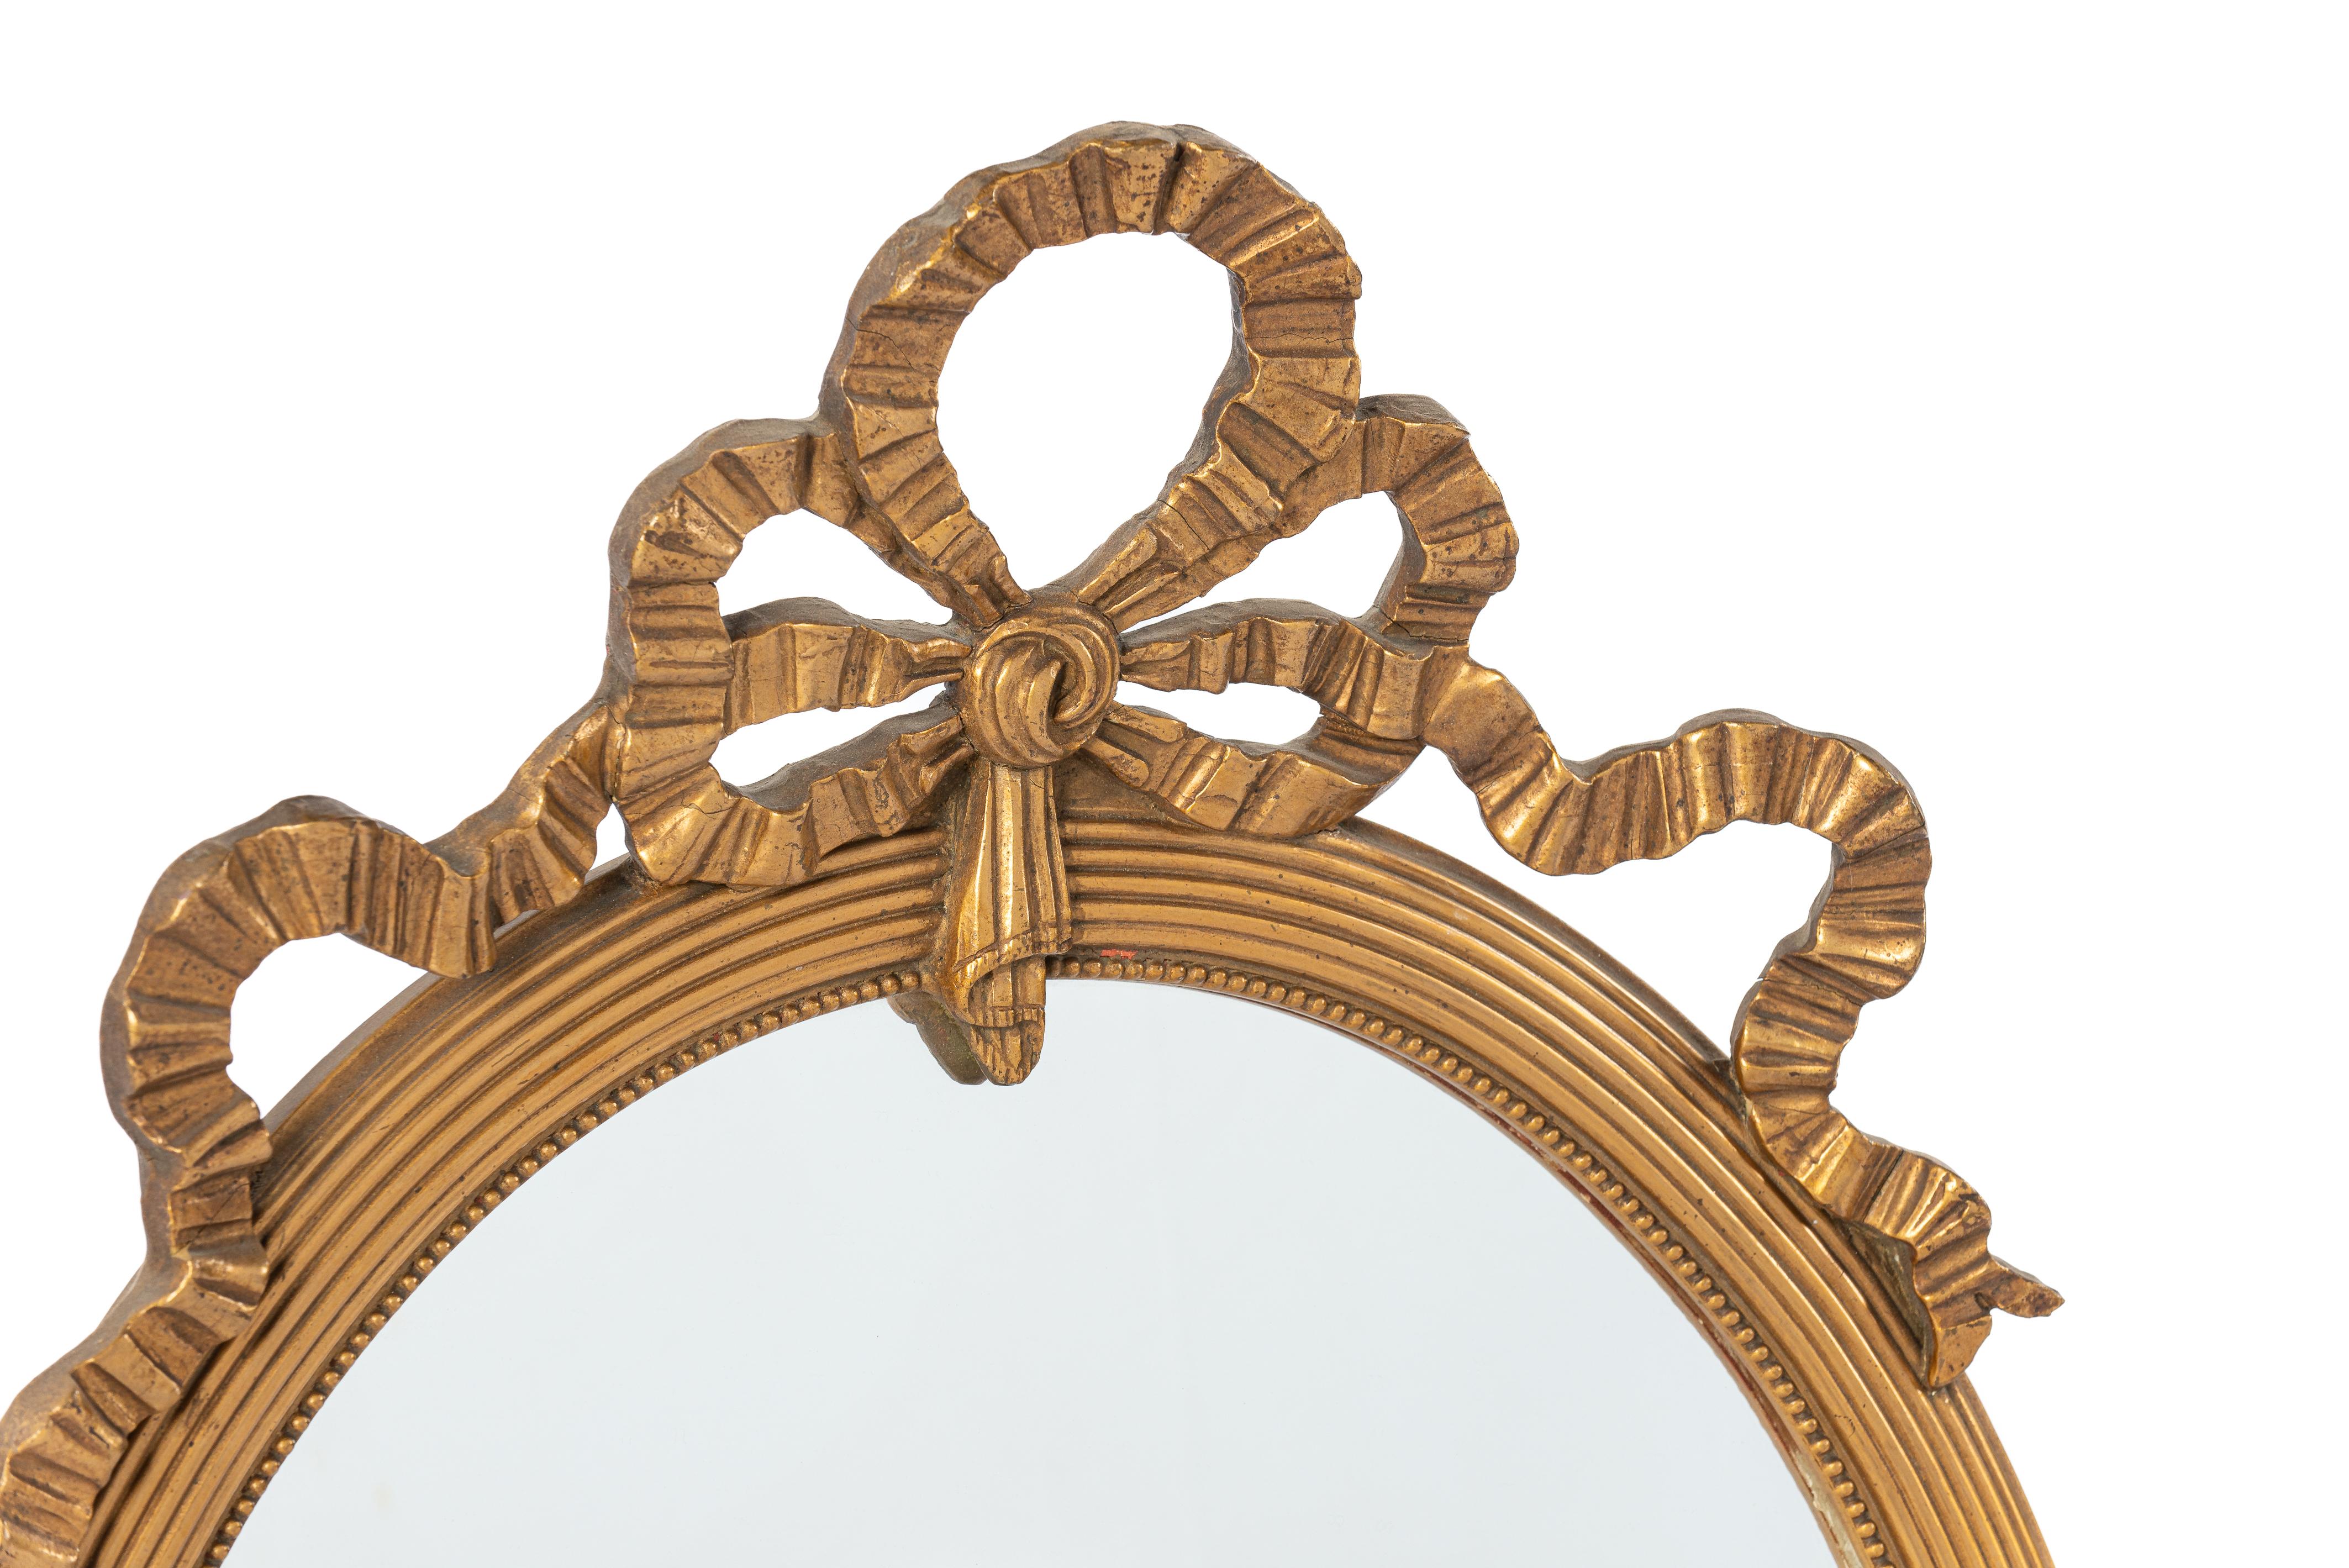 Dieser wunderschöne und elegante ovale Spiegel wurde im frühen zwanzigsten Jahrhundert, um 1910, in Nordfrankreich hergestellt. Der Rahmen ist aus Lindenholz gefertigt und mit Gesso geglättet. Der Rahmen ist mit subtilen und detaillierten Leisten